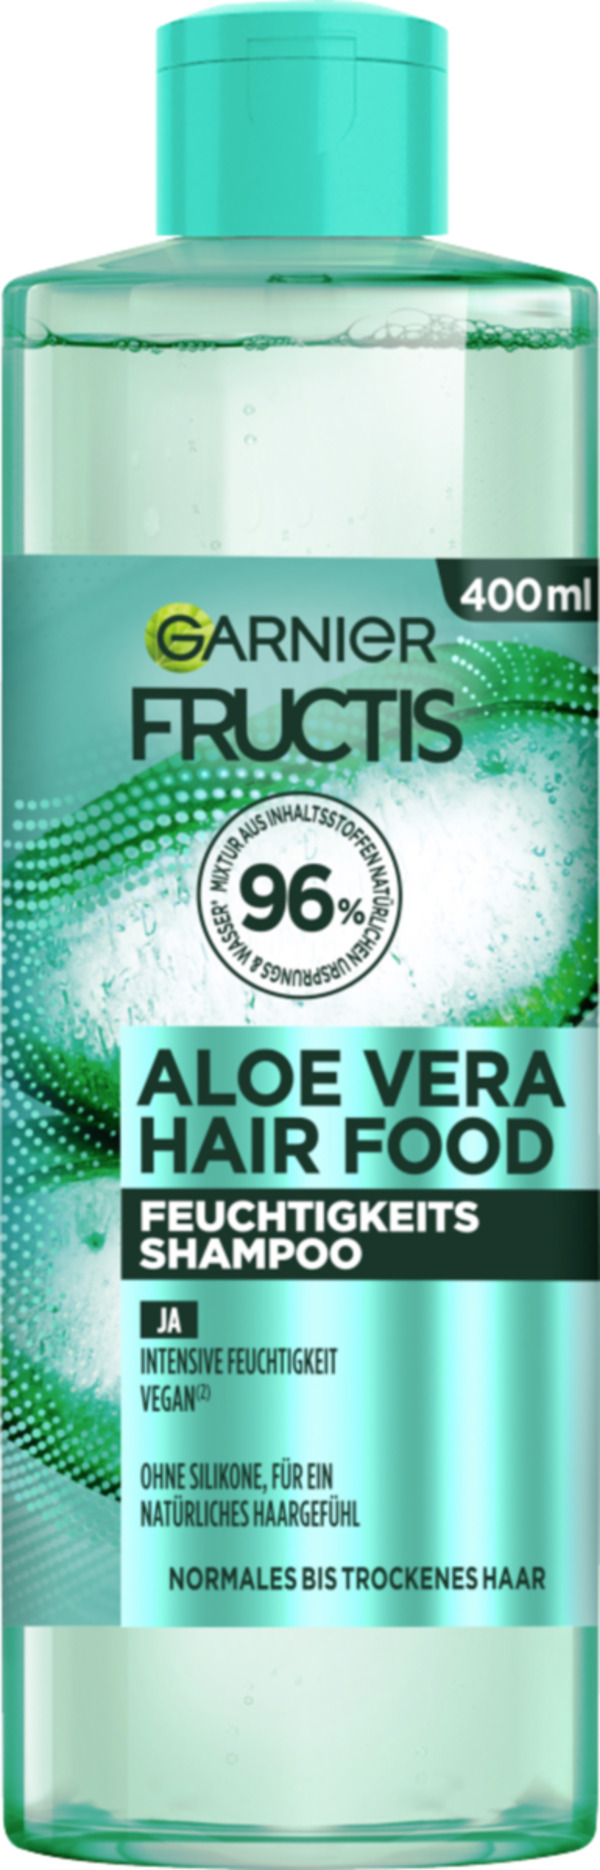 Bild 1 von Garnier Fructis Feuchtigkeits Aloe Vera Hair Food Shampoo